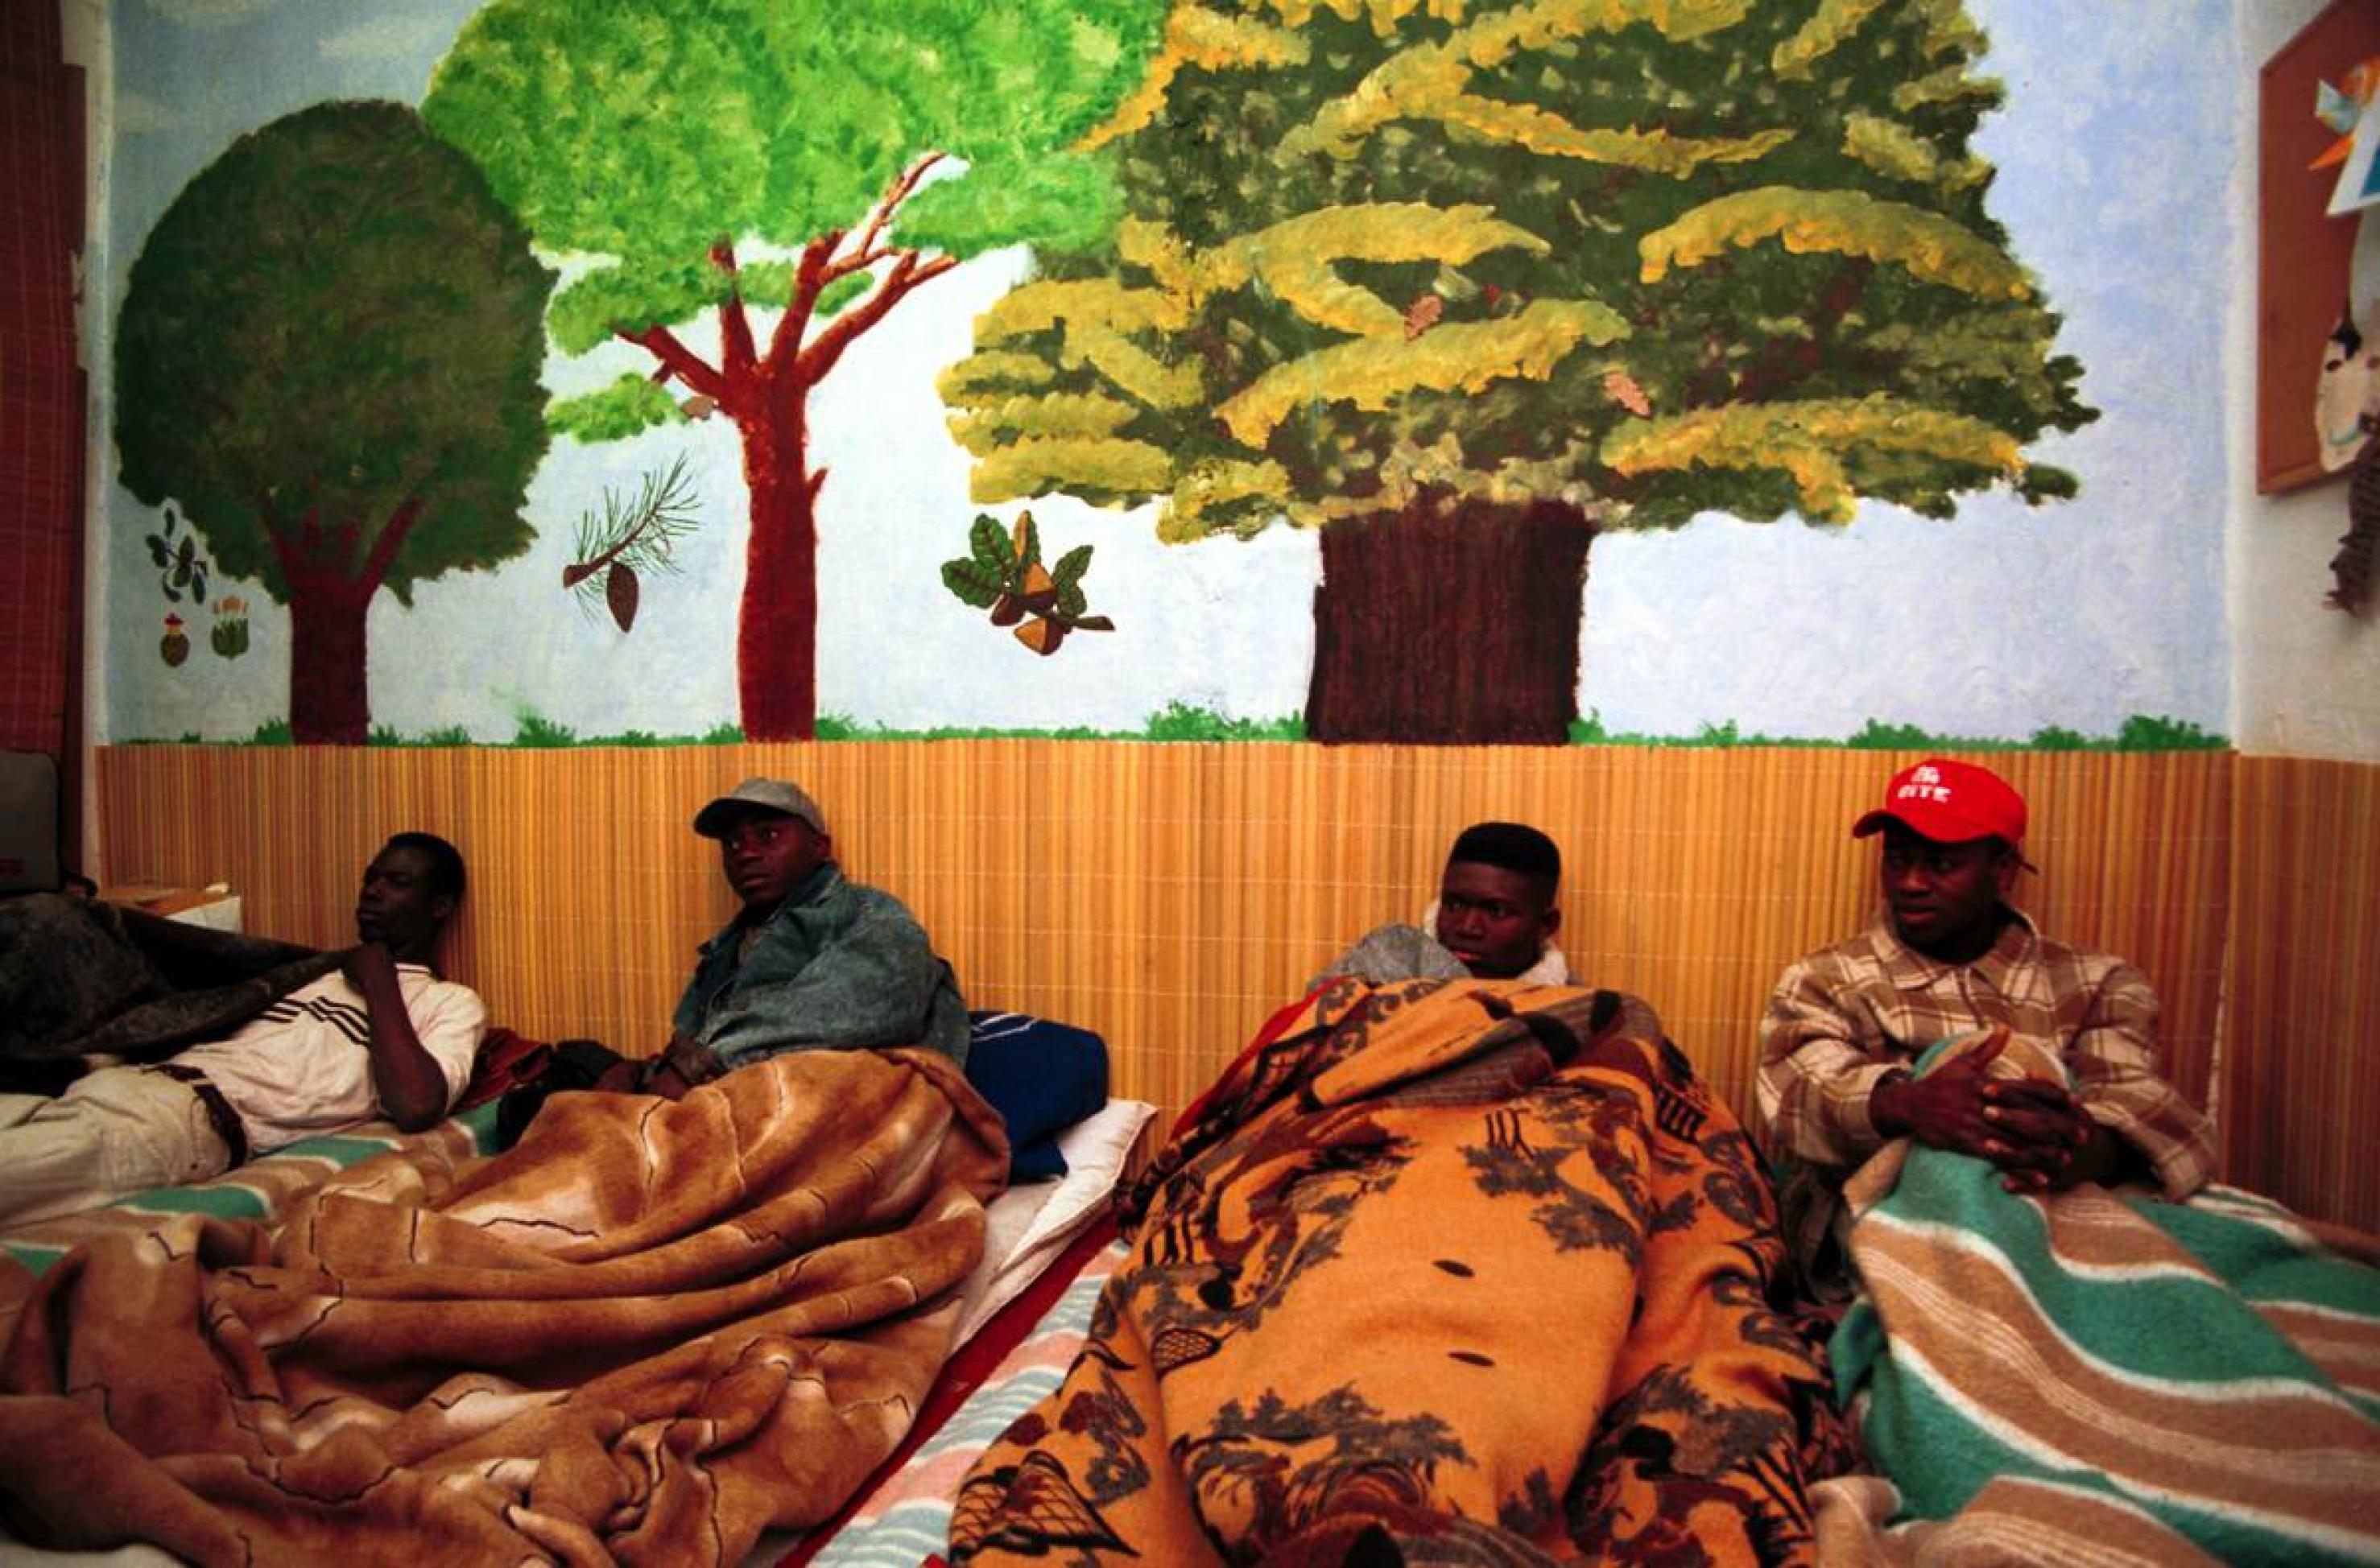 Afrikanische Migranten schlafen in einer als Unterkunft hergerichteten Wohnung in Barcelona am Boden.